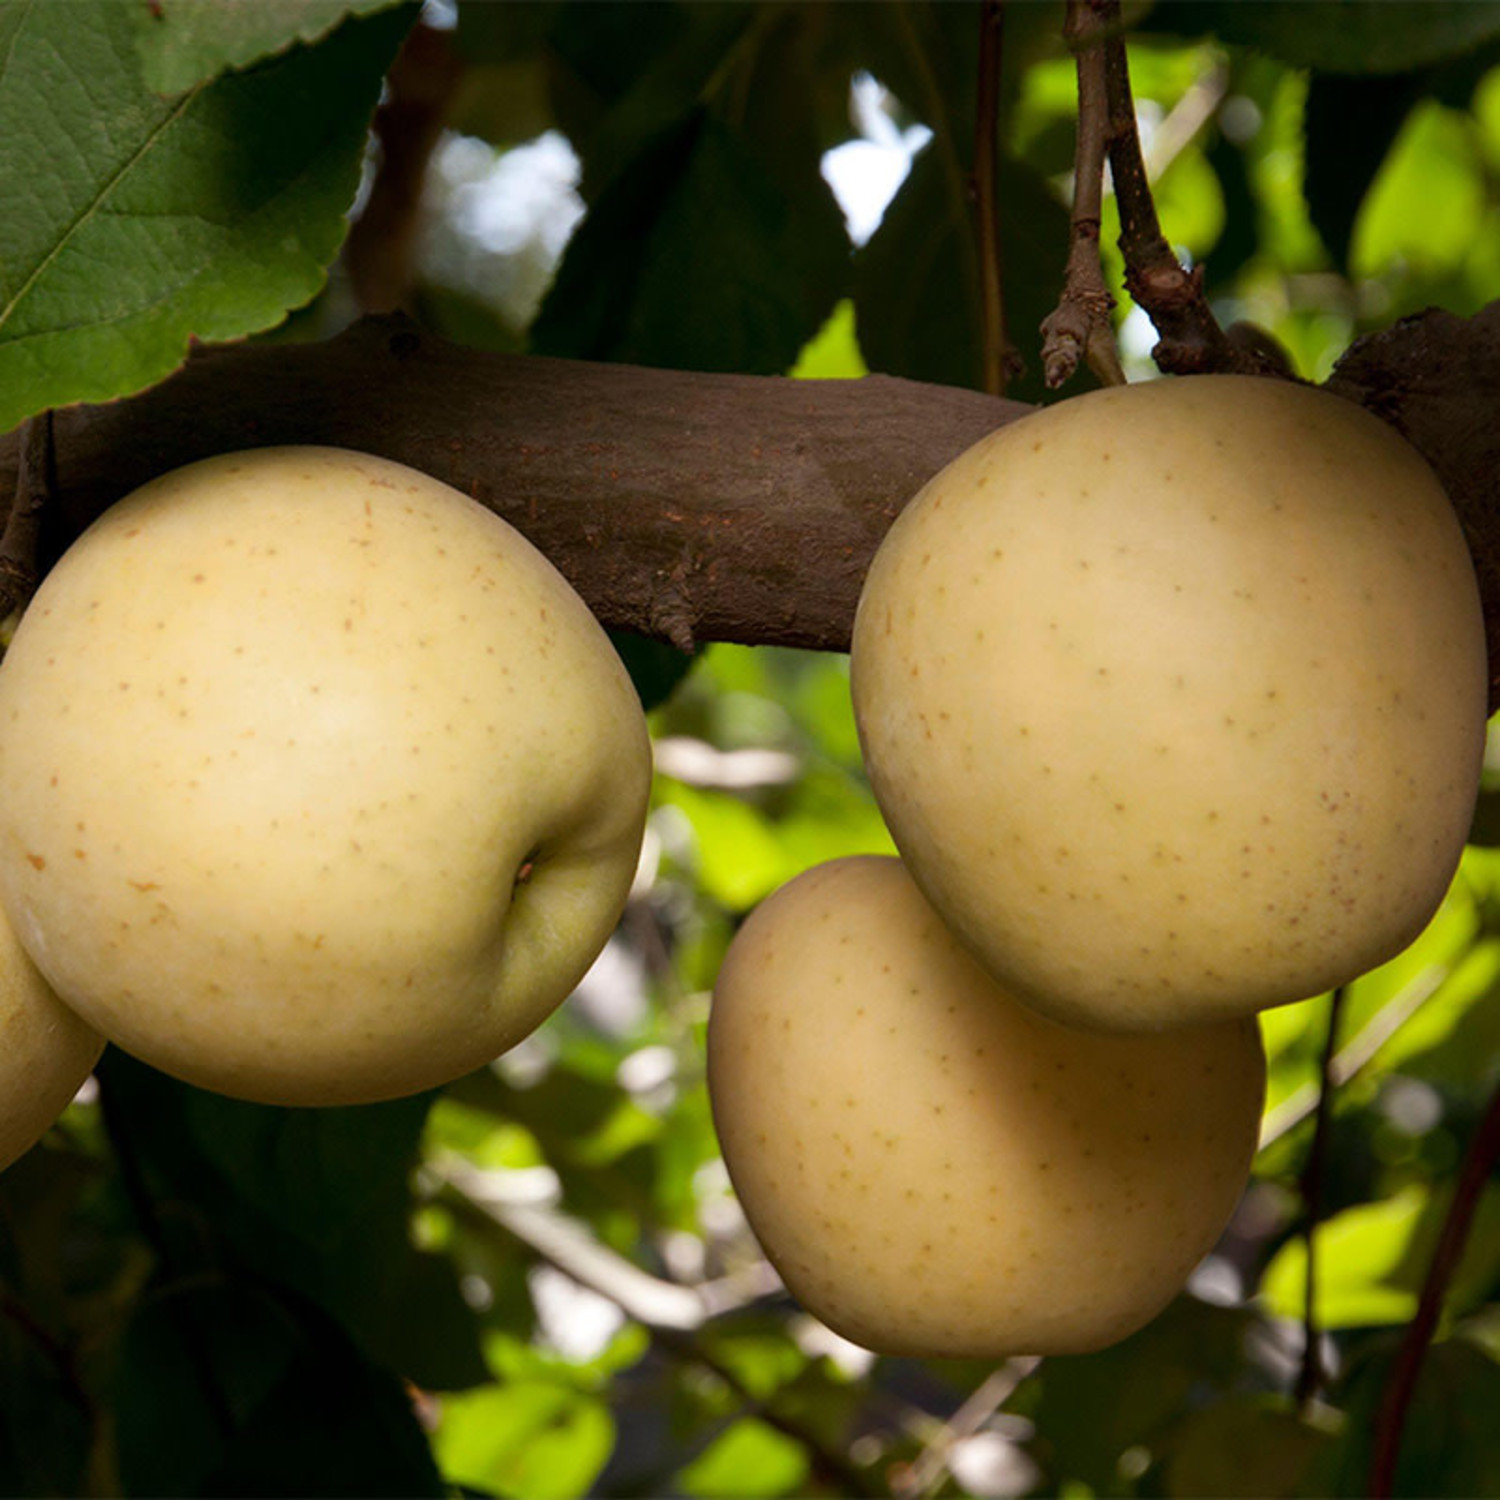 Malus domestica 'Golden Delicious' (Semi-Dwarf Apple)